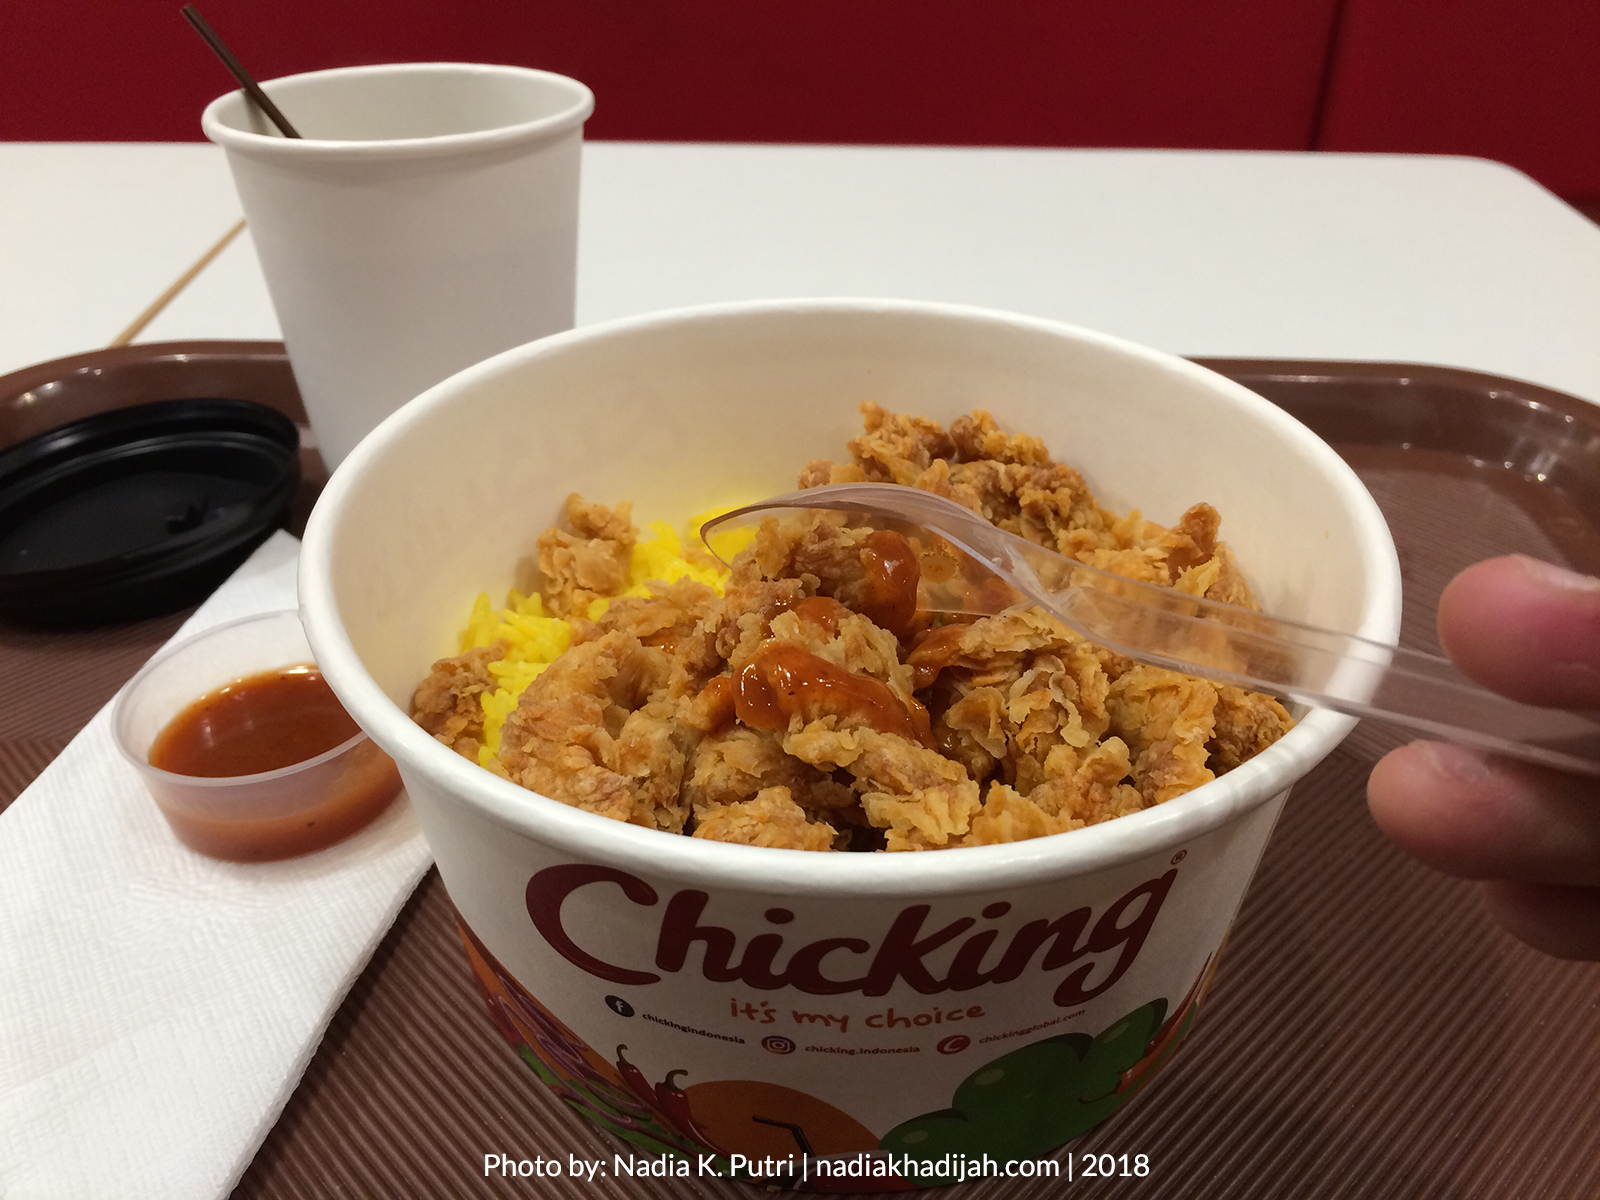 Semacam bento rice dengan ayam goreng krispi, ditemani dengan teh Arab. Ini menu pertama yang saya coba di resto ayam Dubai Chicking Bekasi. Rasanya? Scroll lanjut! (Foto: Nadia K. Putri/nadiakhadijah.com)